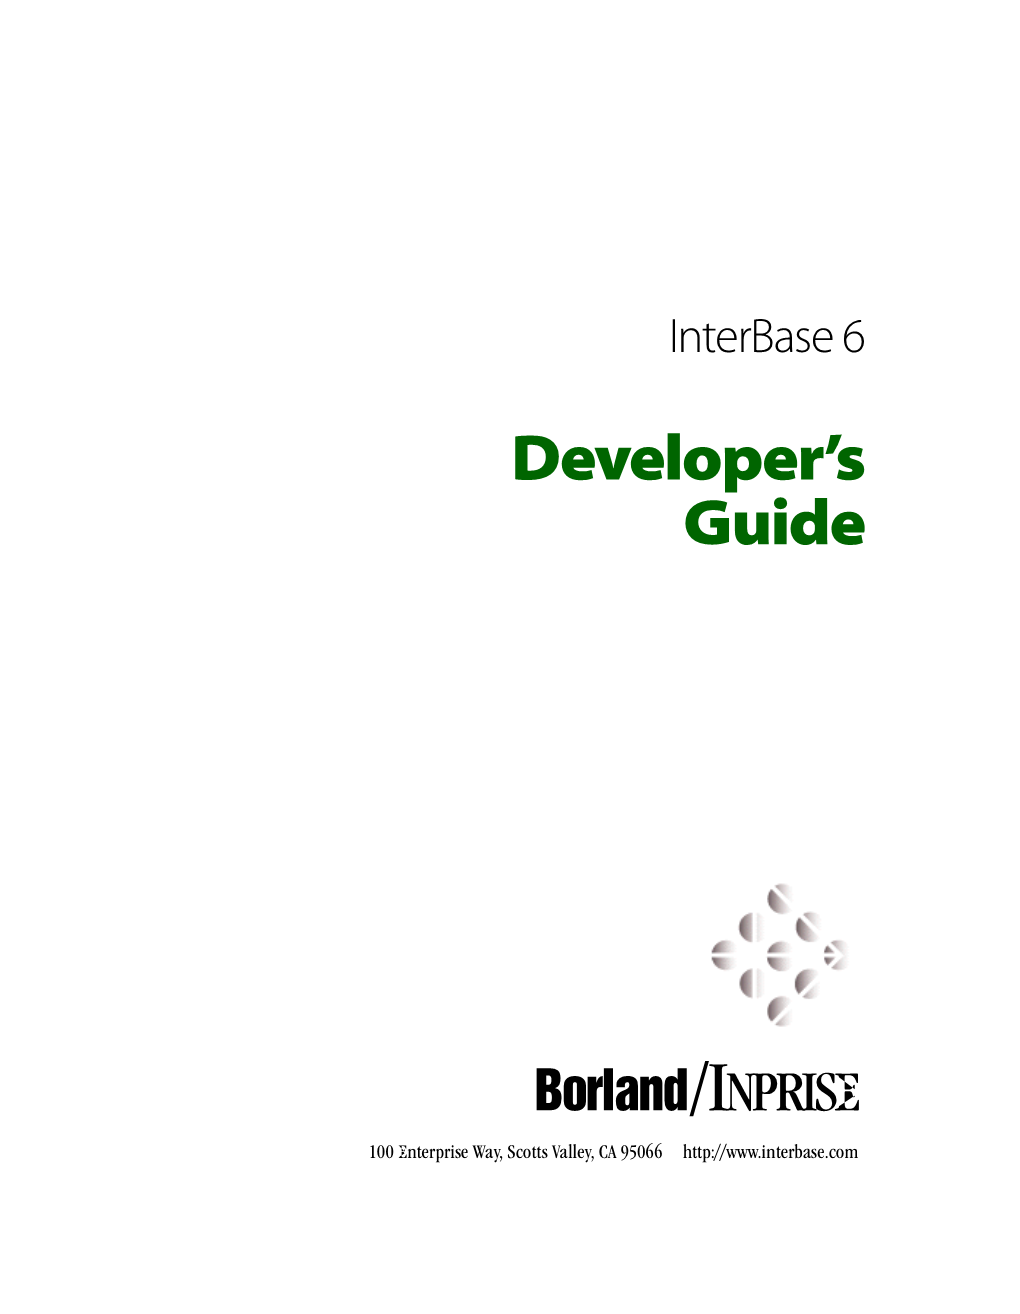 Developer's Guide